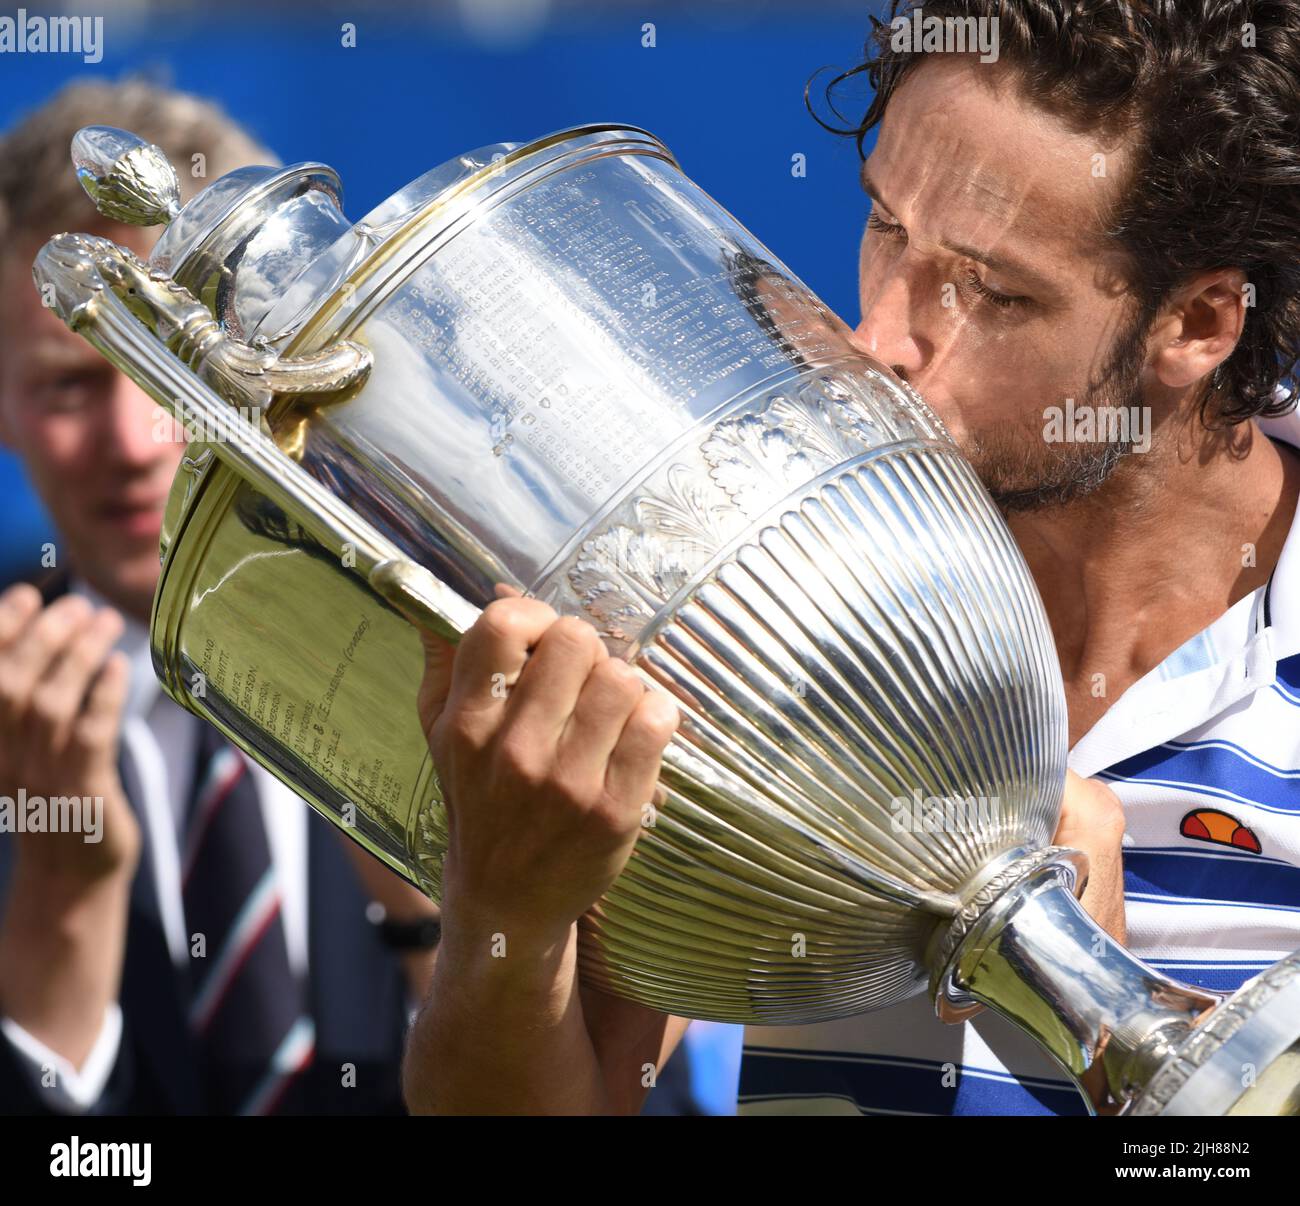 Londres, Royaume-Uni. 25 juin 2017. FINALE : FELICIANO LOPEZ (numéro 32 mondial) remporte les victoires de MARIN CILIC (numéro 4 mondial), Aegon tennis Queen's Club. Banque D'Images